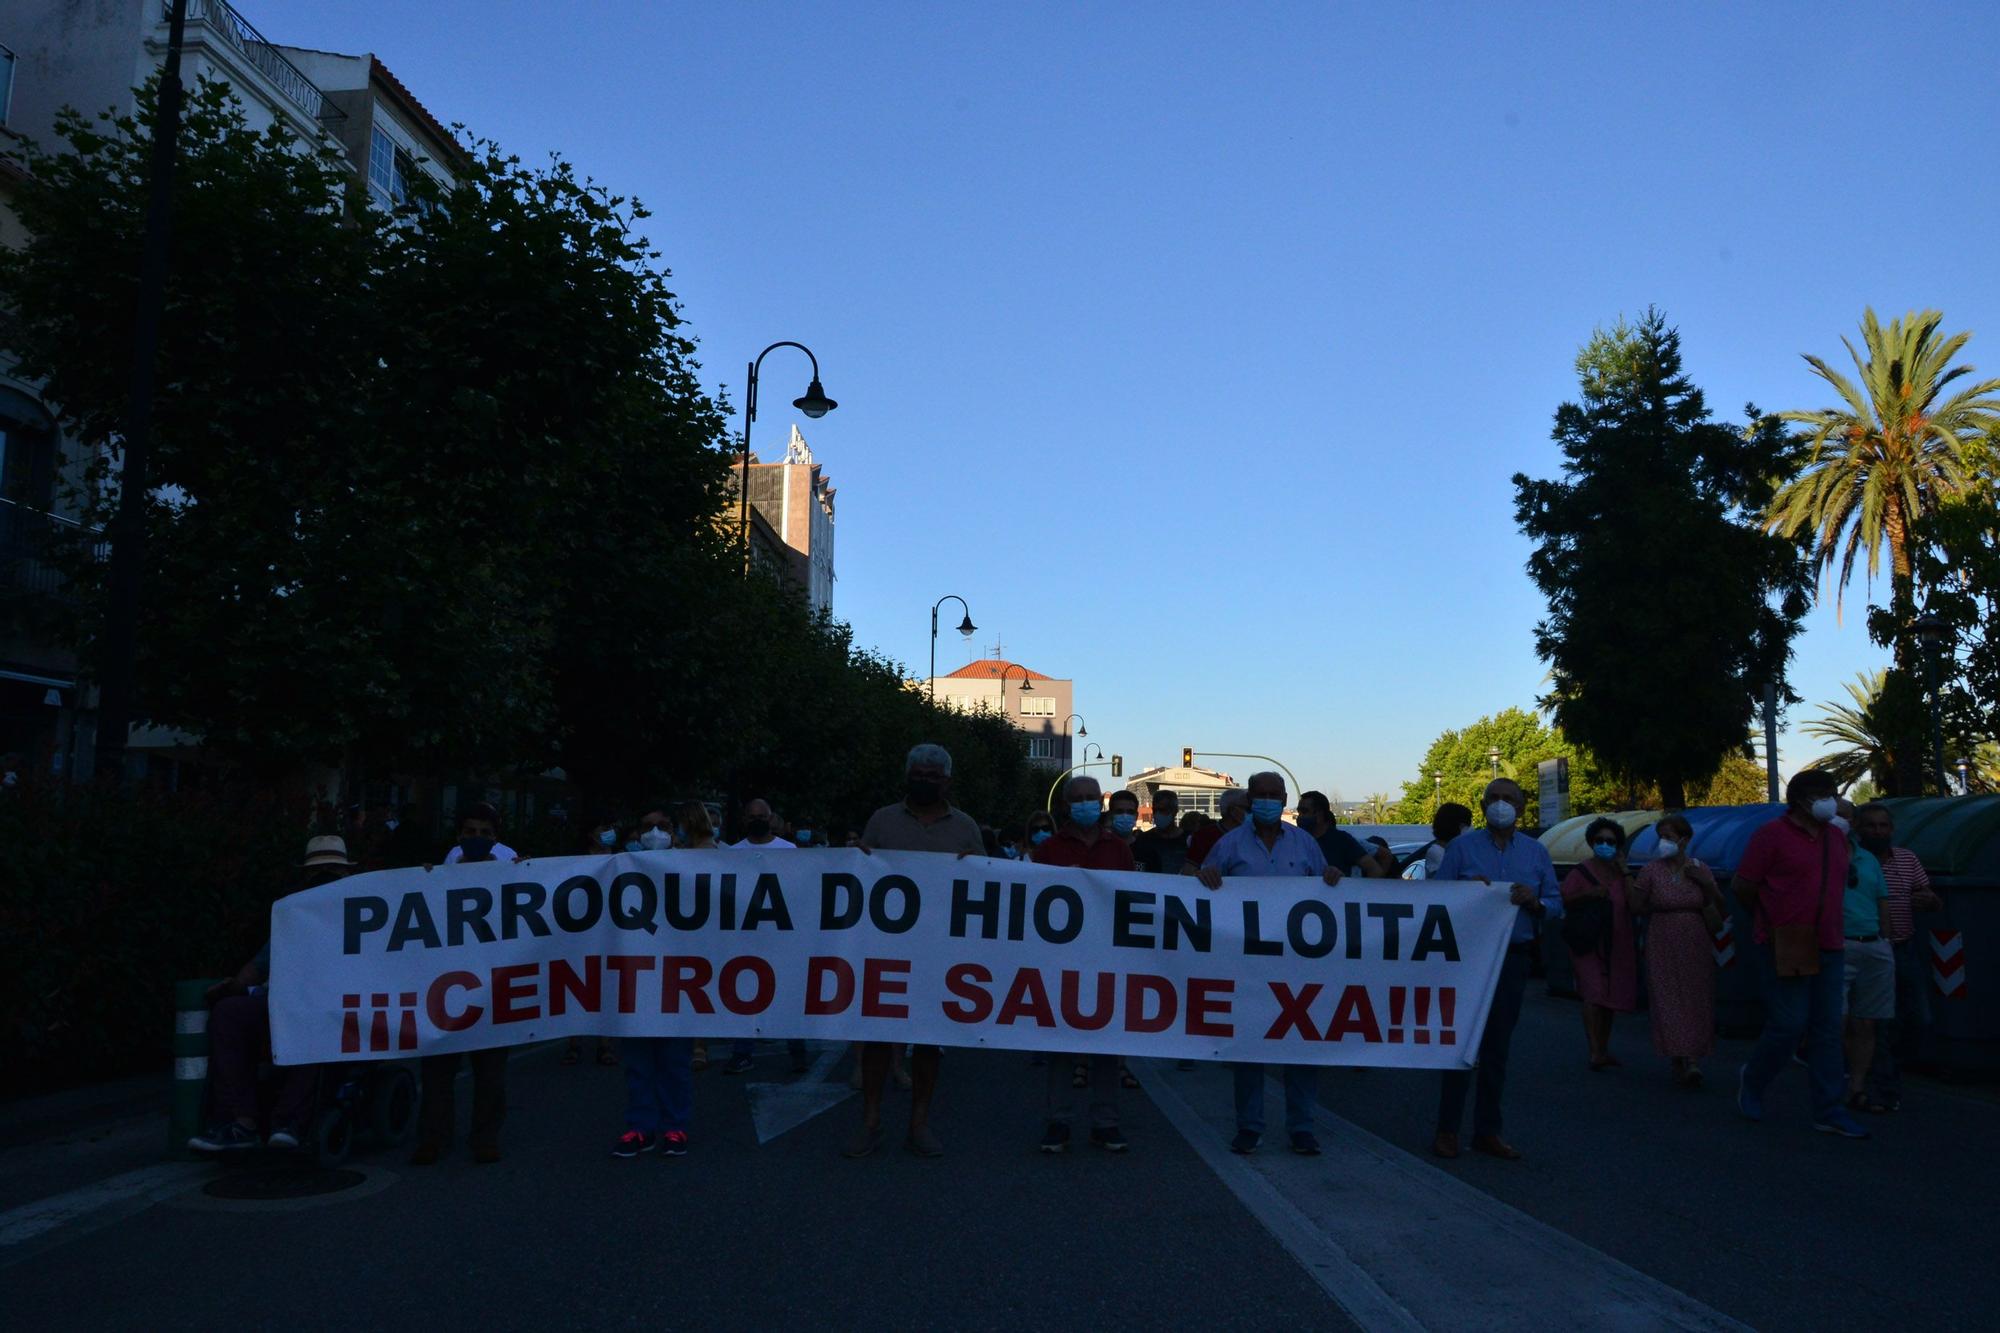 Marcha por la sanidad pública en Cangas